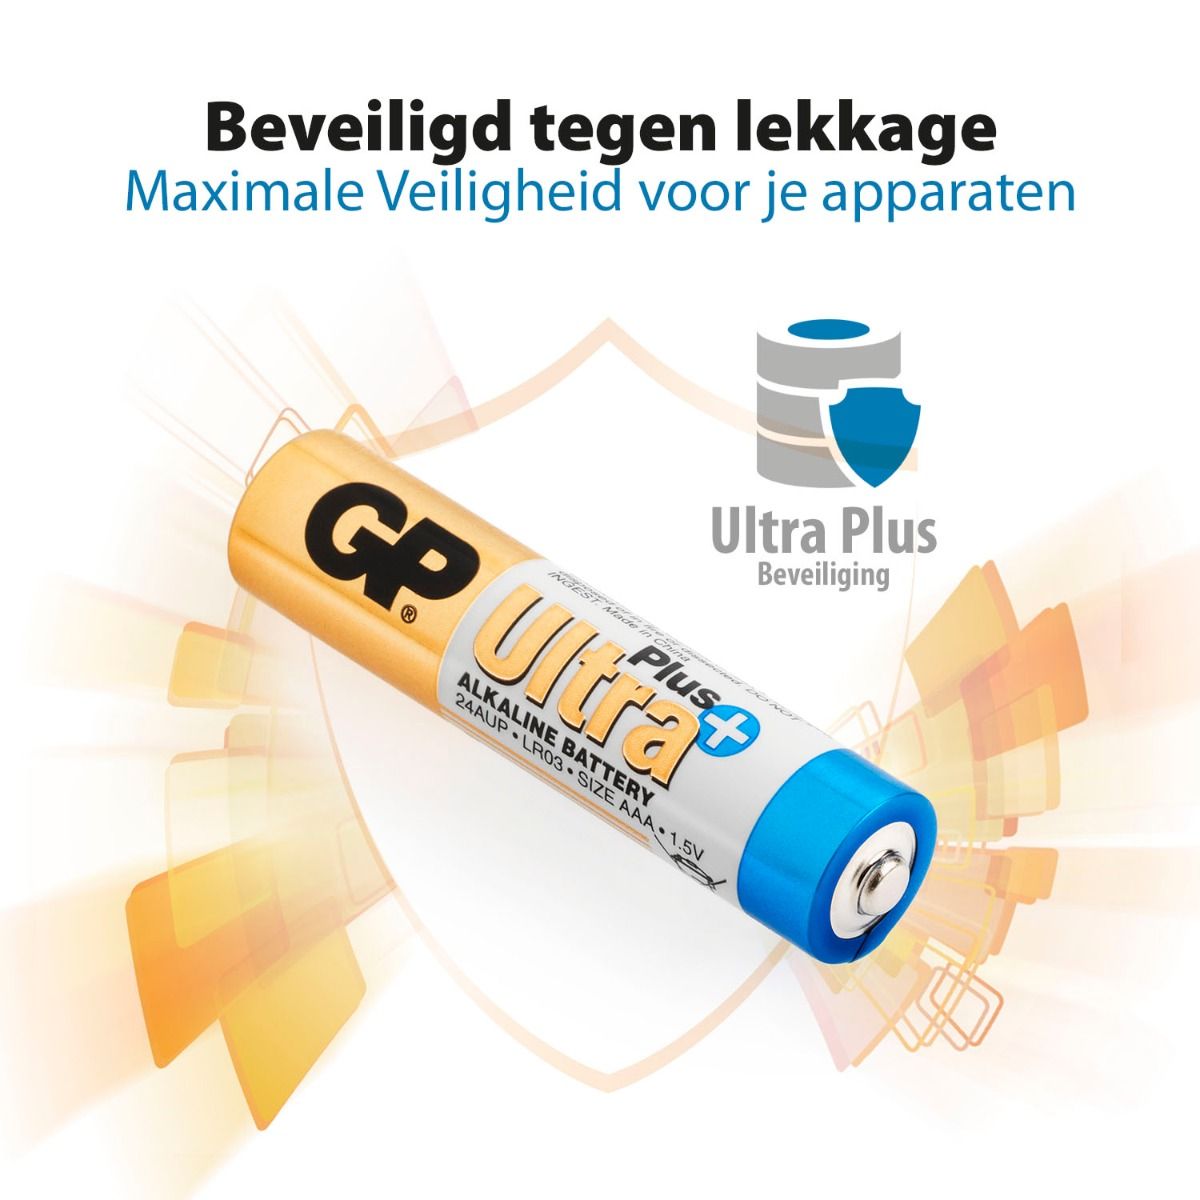 Ultra Plus Alkaline AAA - 4 batterijen beveiligd tegen lekkage